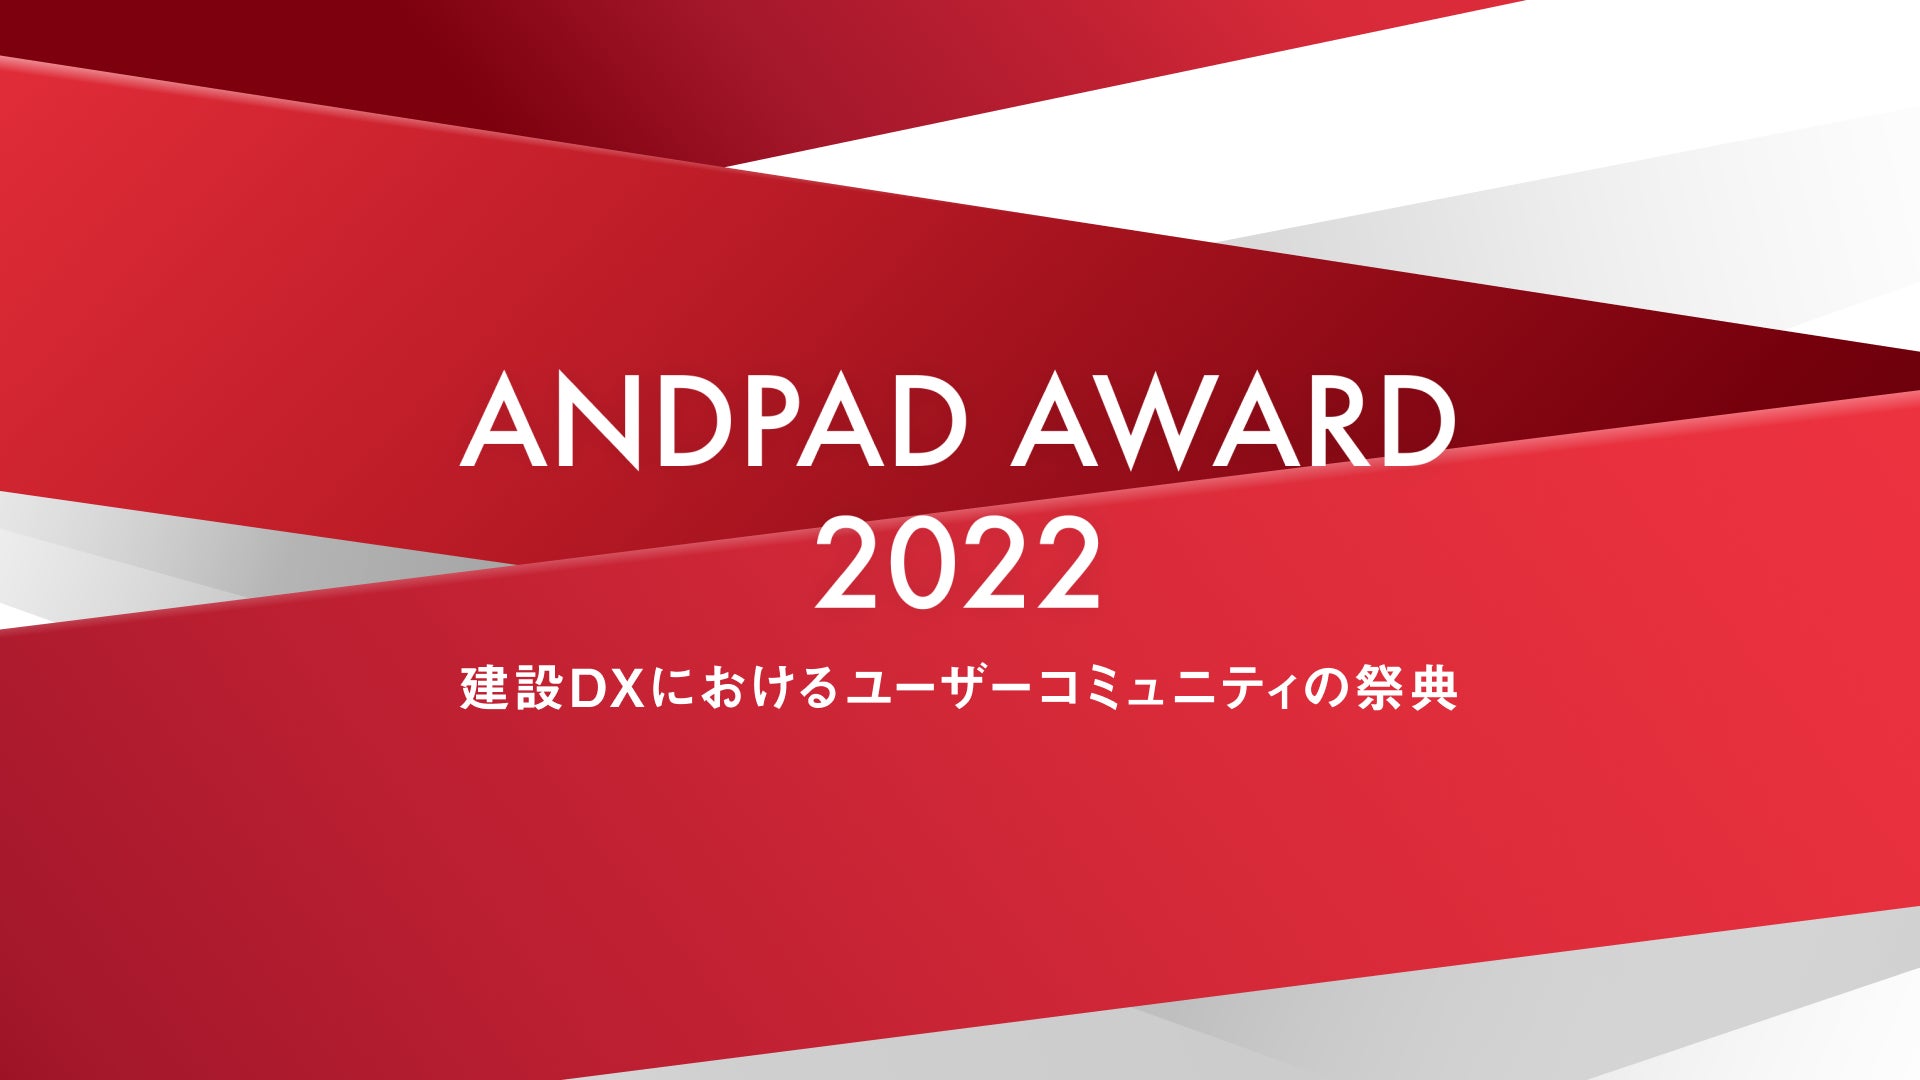 ANDPAD AWARD 2022 開催決定のサブ画像1